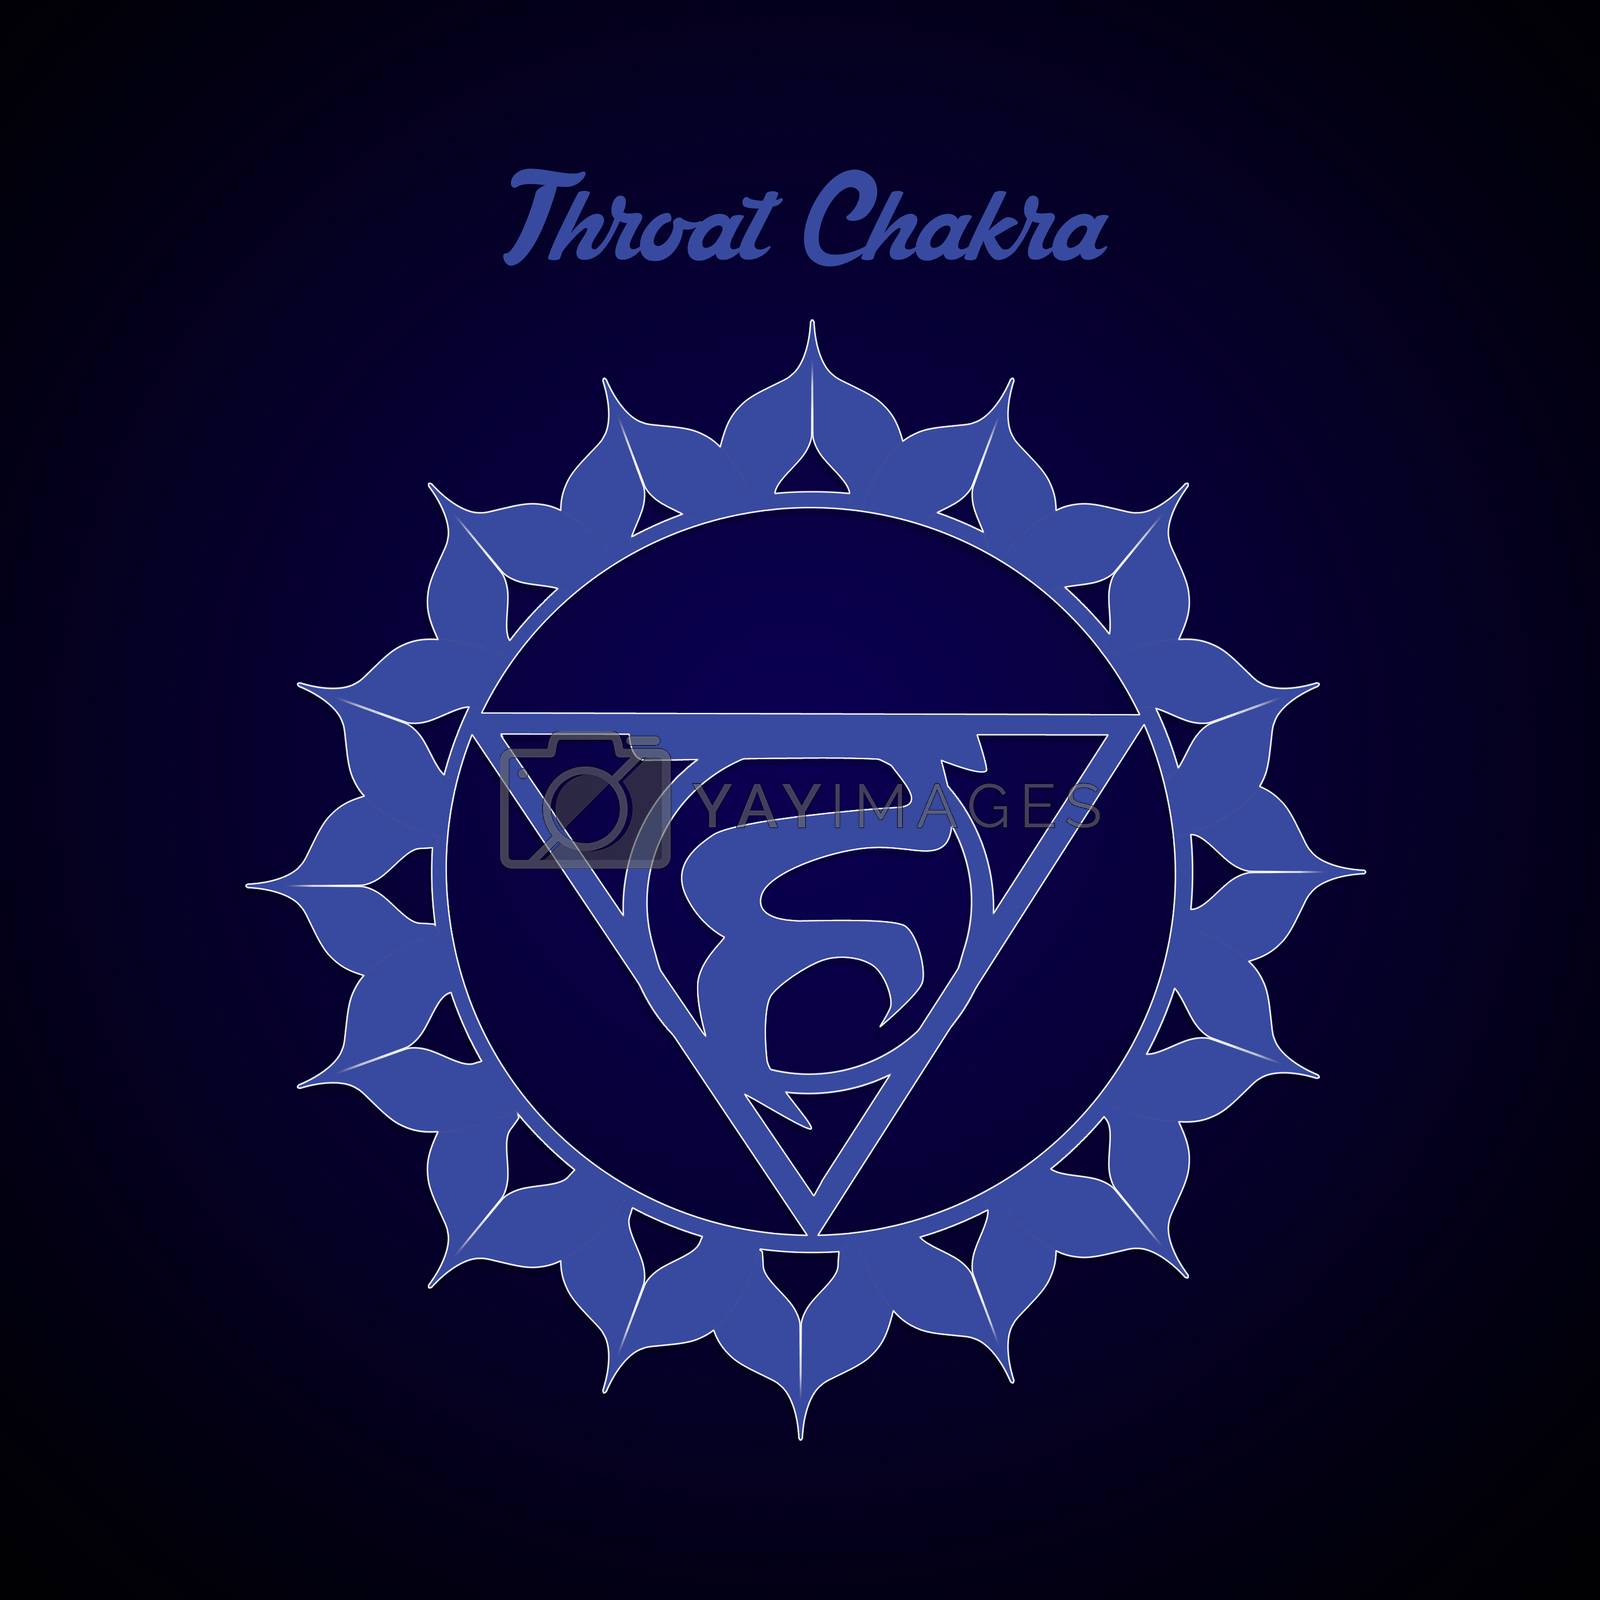 Royalty free image of Throat Chakra by adrenalina